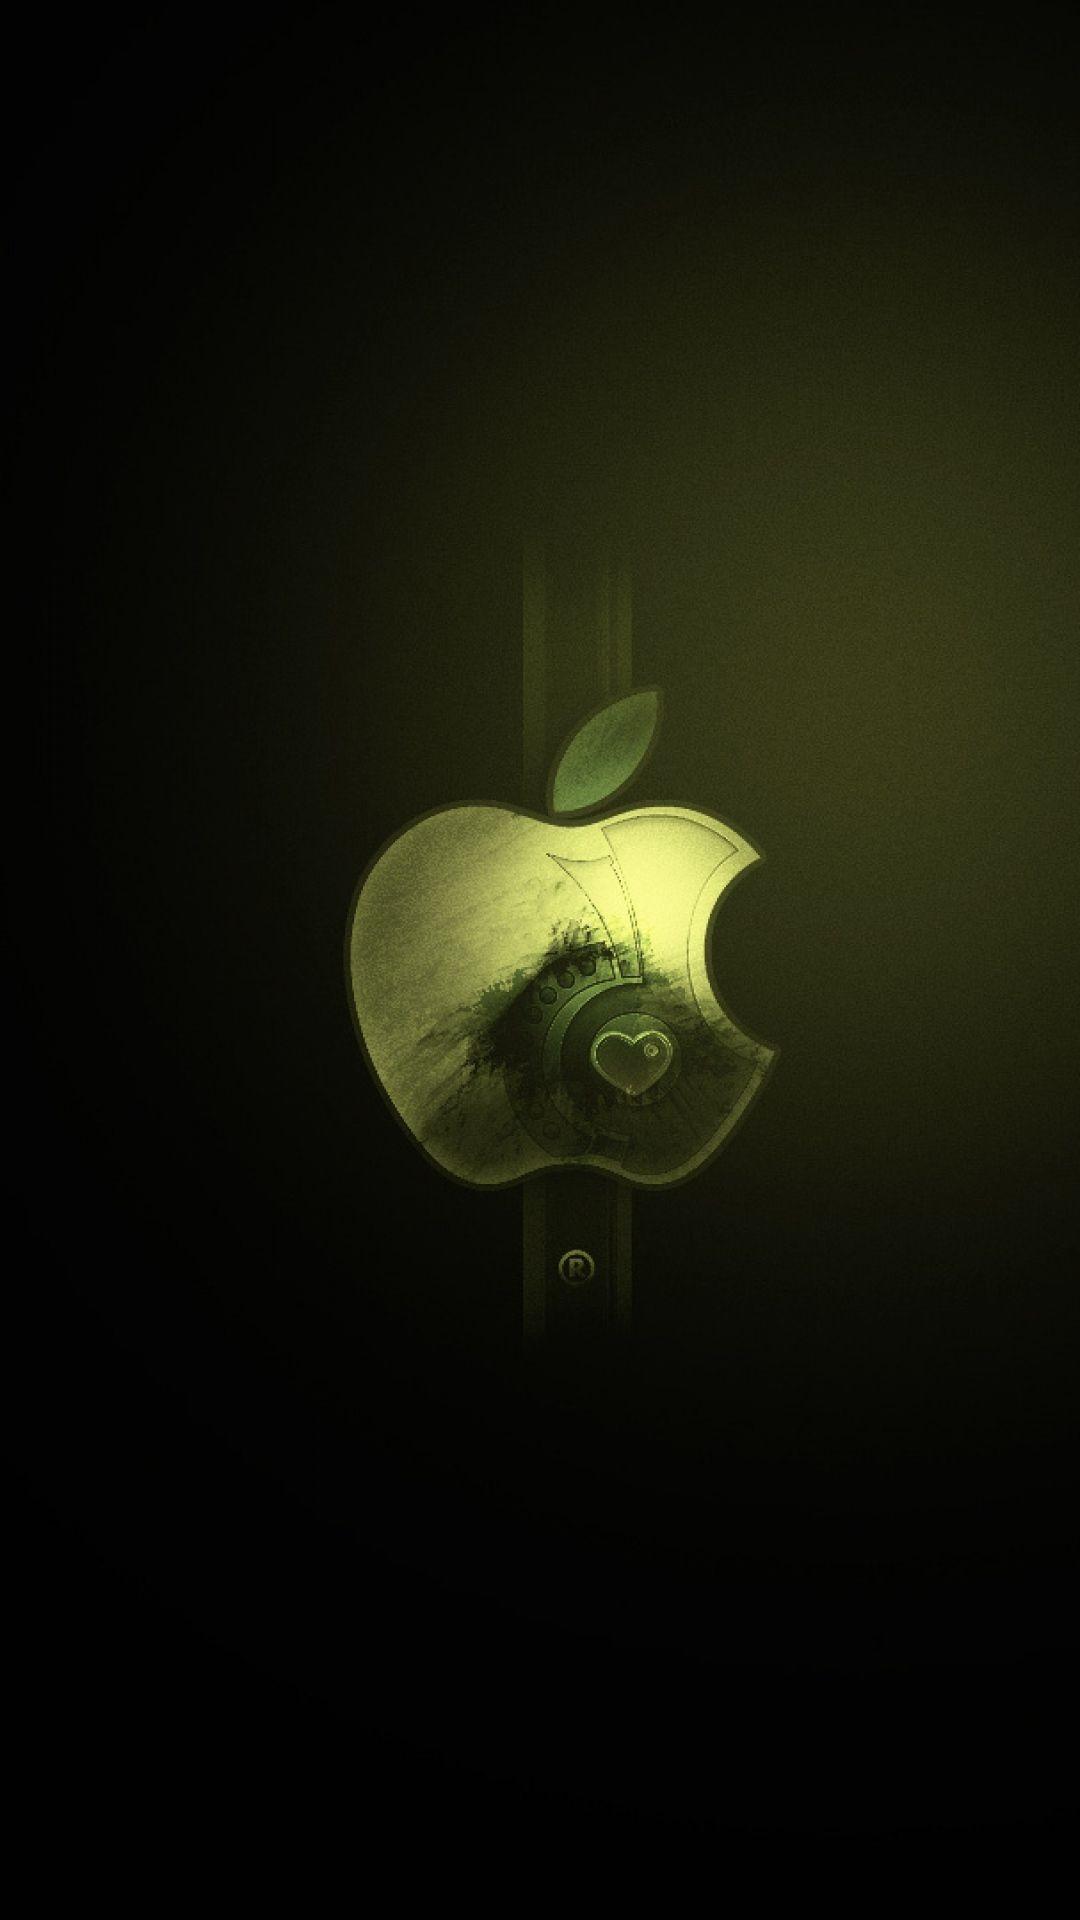 1080x1920 Hình nền Logo Apple tuyệt vời dành cho iPhone